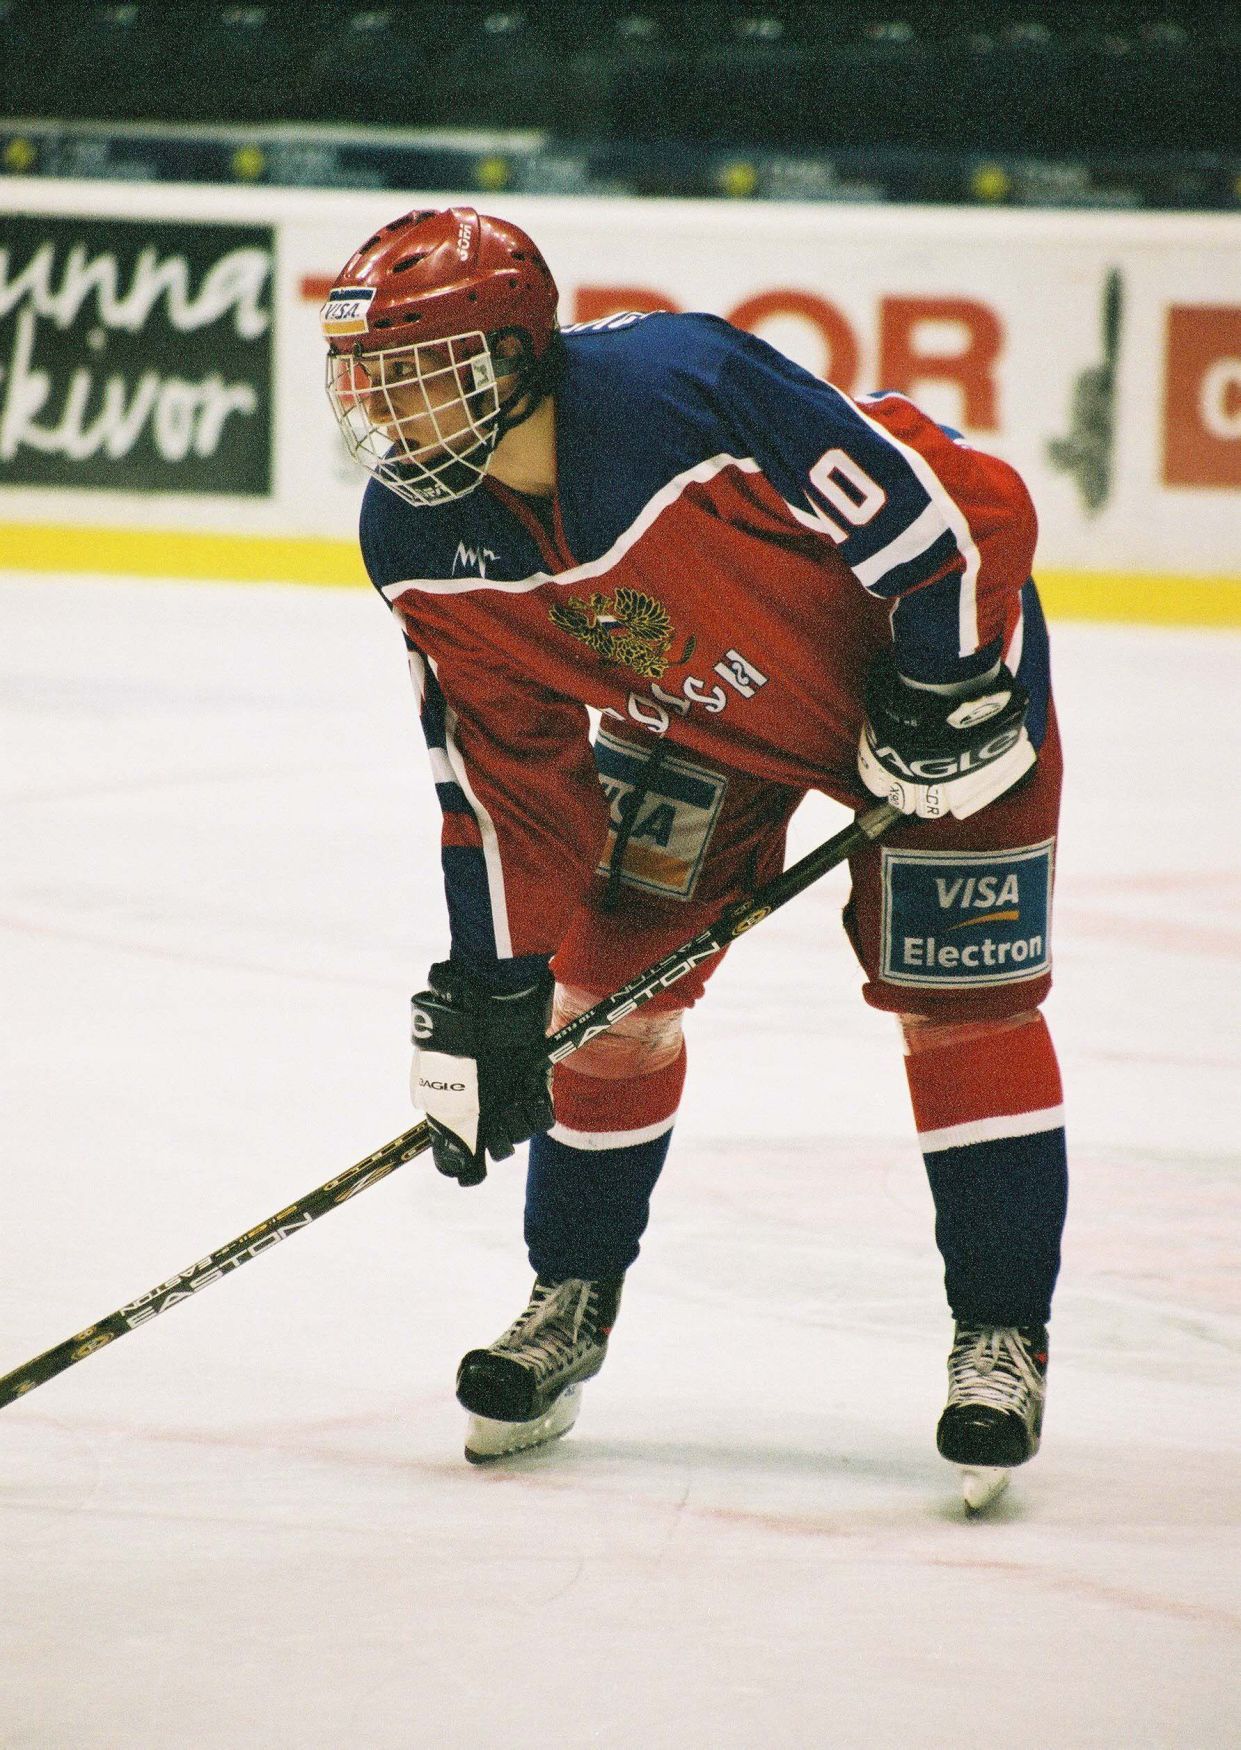 Hvězdy NHL za mlada: Alexandr Ovečkin